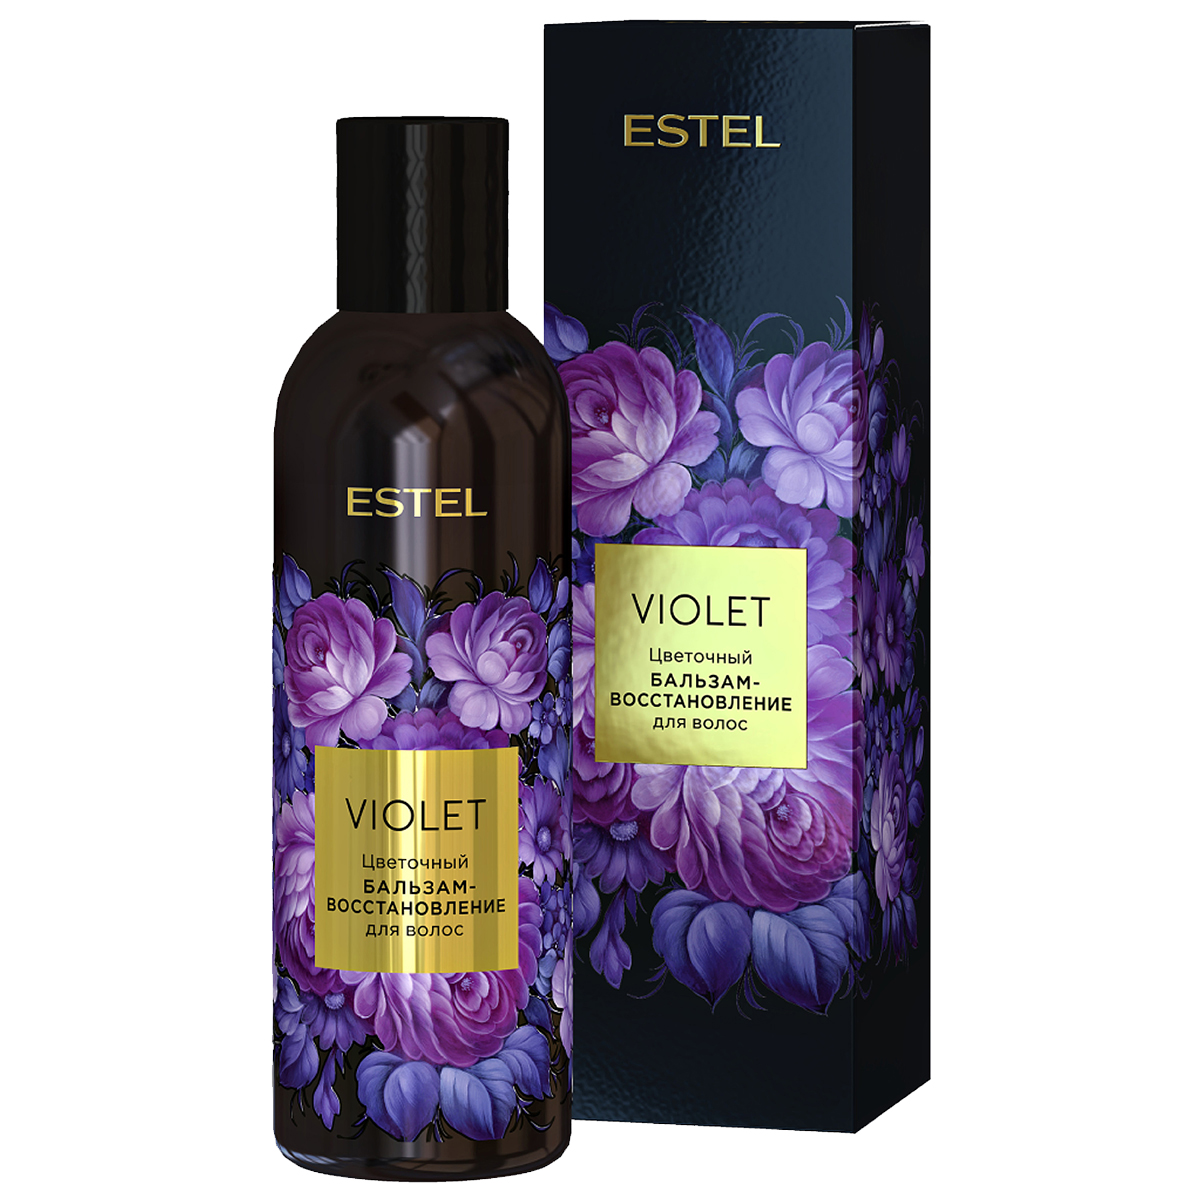 бальзам-восстановление ESTEL VIOLET для волос цветочный 200 мл оттеночный бальзам для волос organic shop masterpiece lavender pixie 100 мл